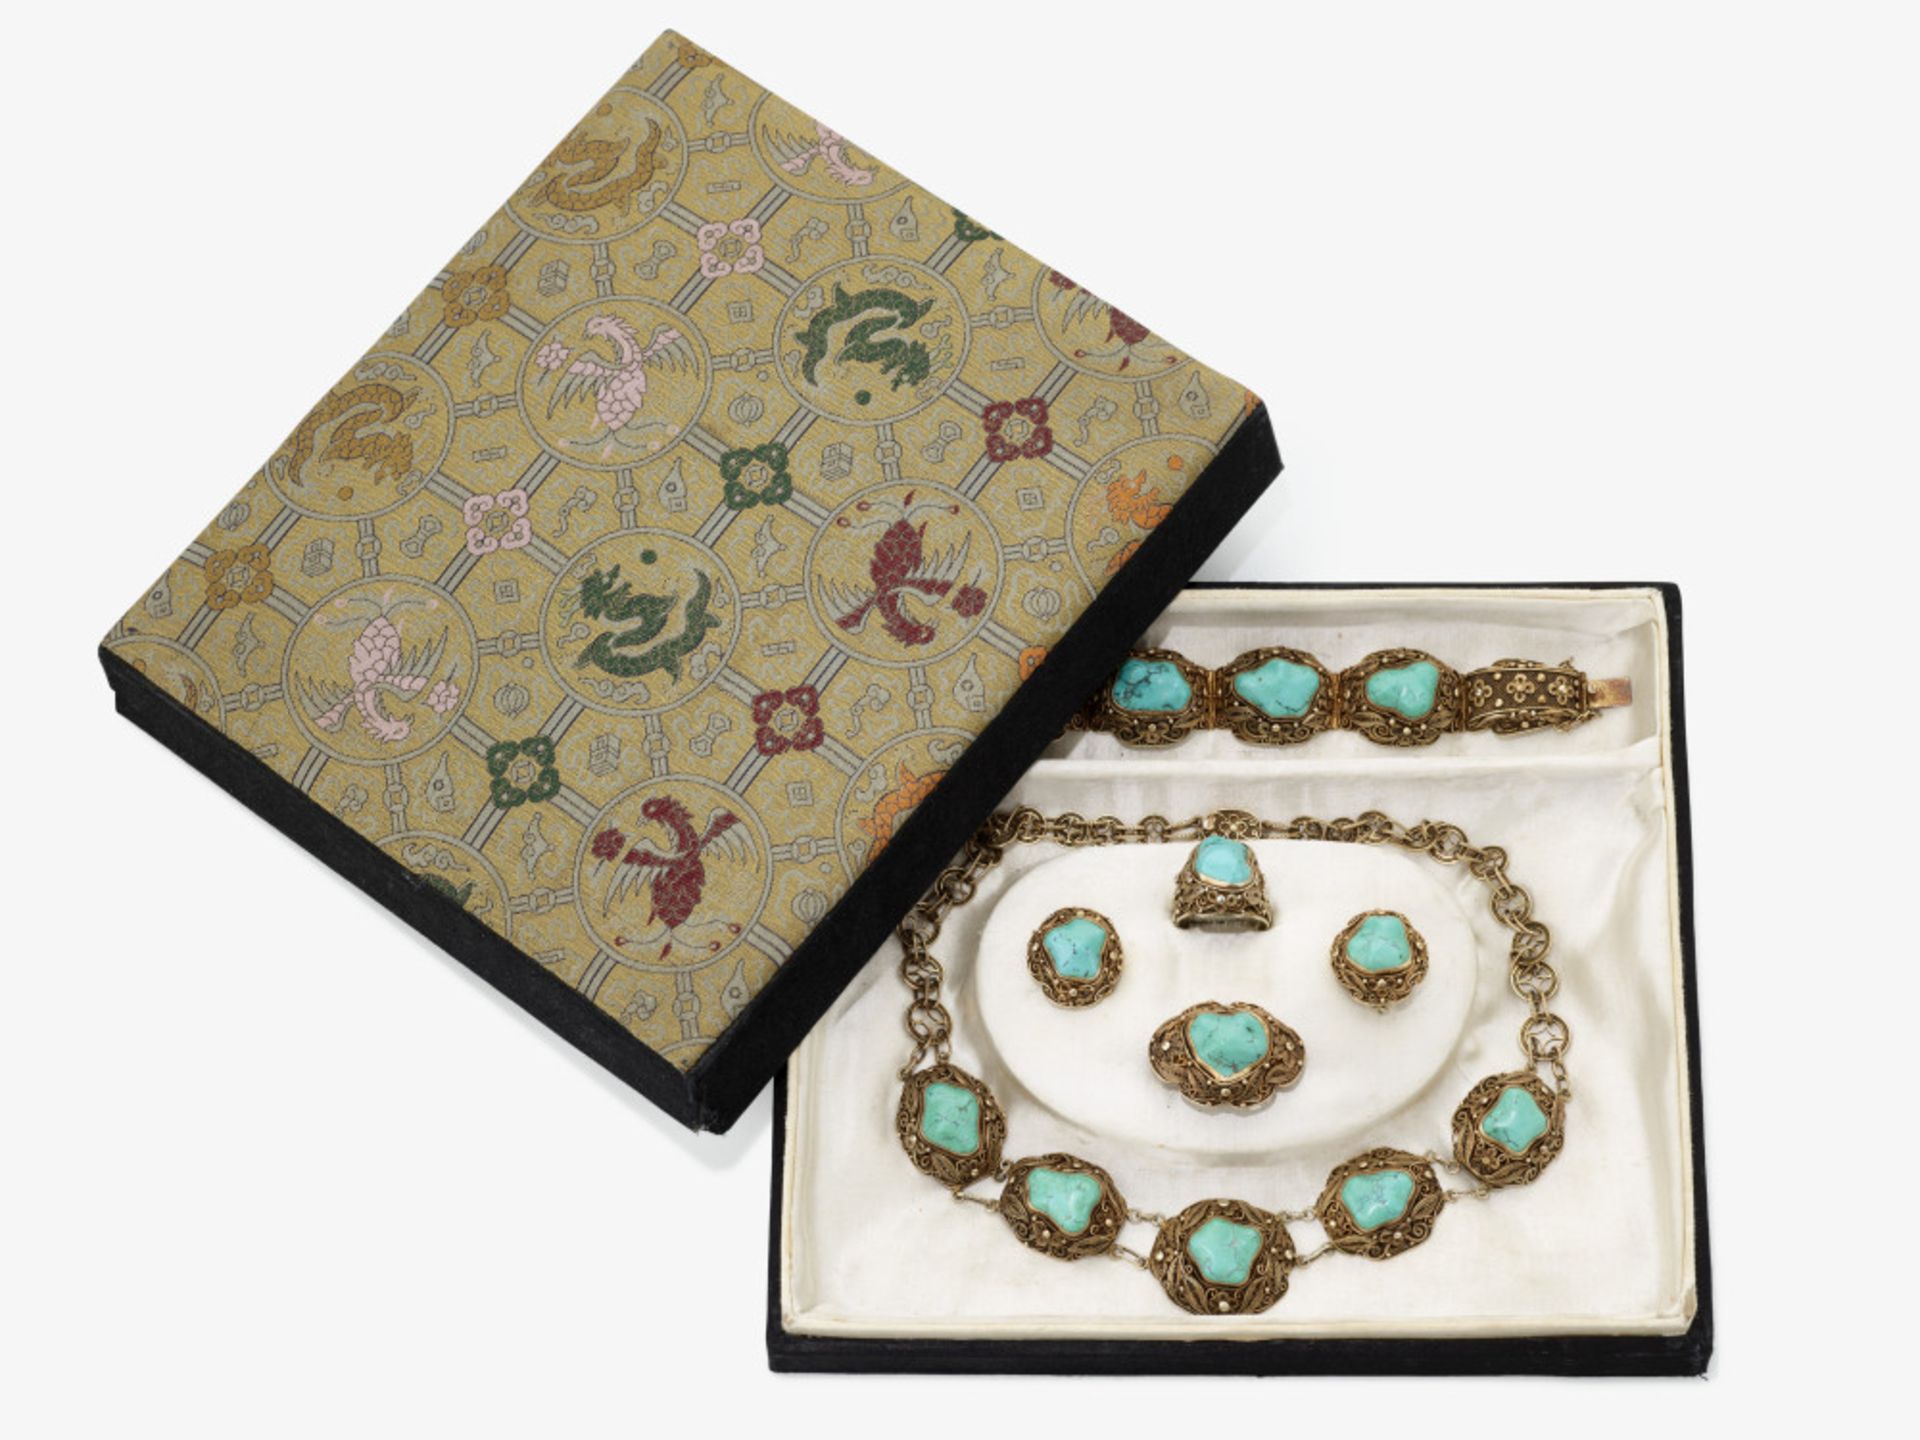 Garnitur mit Türkisen: bestehend aus Kette, Armband, Ring, Brosche und einem Paar Ohrringe - Bild 12 aus 14